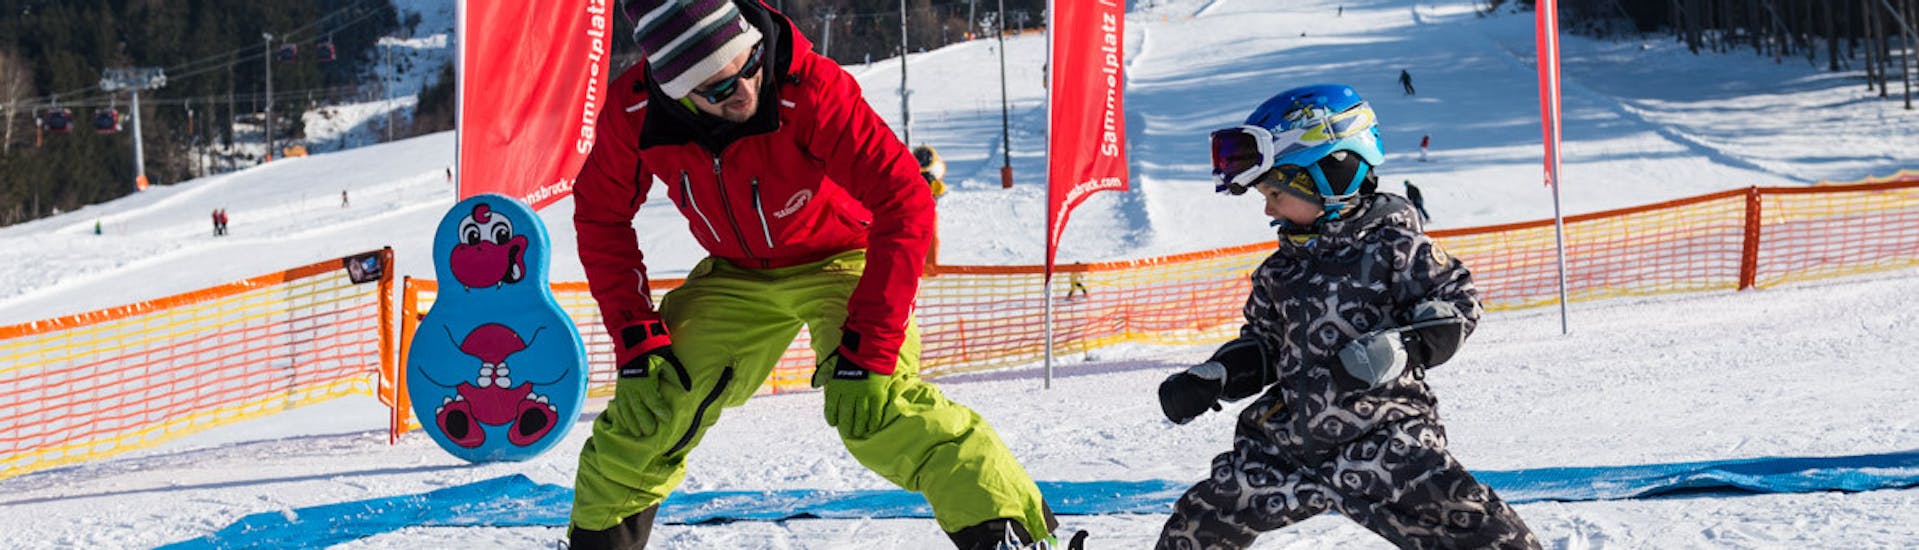 Cours particulier de ski Enfants avec Expérience avec Ski- & Snowboardschule Innsbruck.